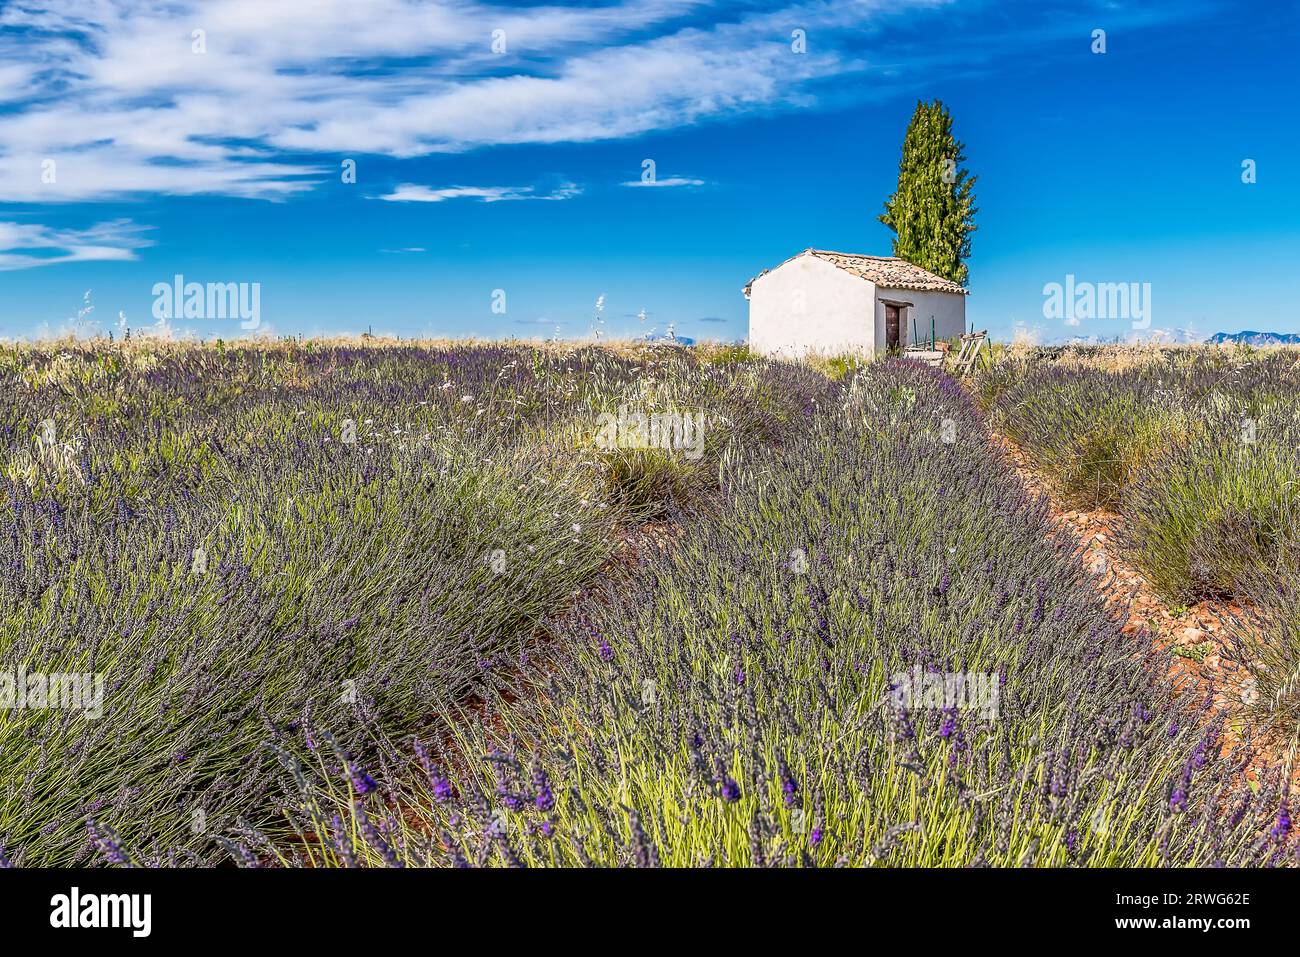 Vue panoramique du champ de lavande pourpre en Provence dans le sud de la France avec cabane en pierre et cyprès en arrière-plan Banque D'Images